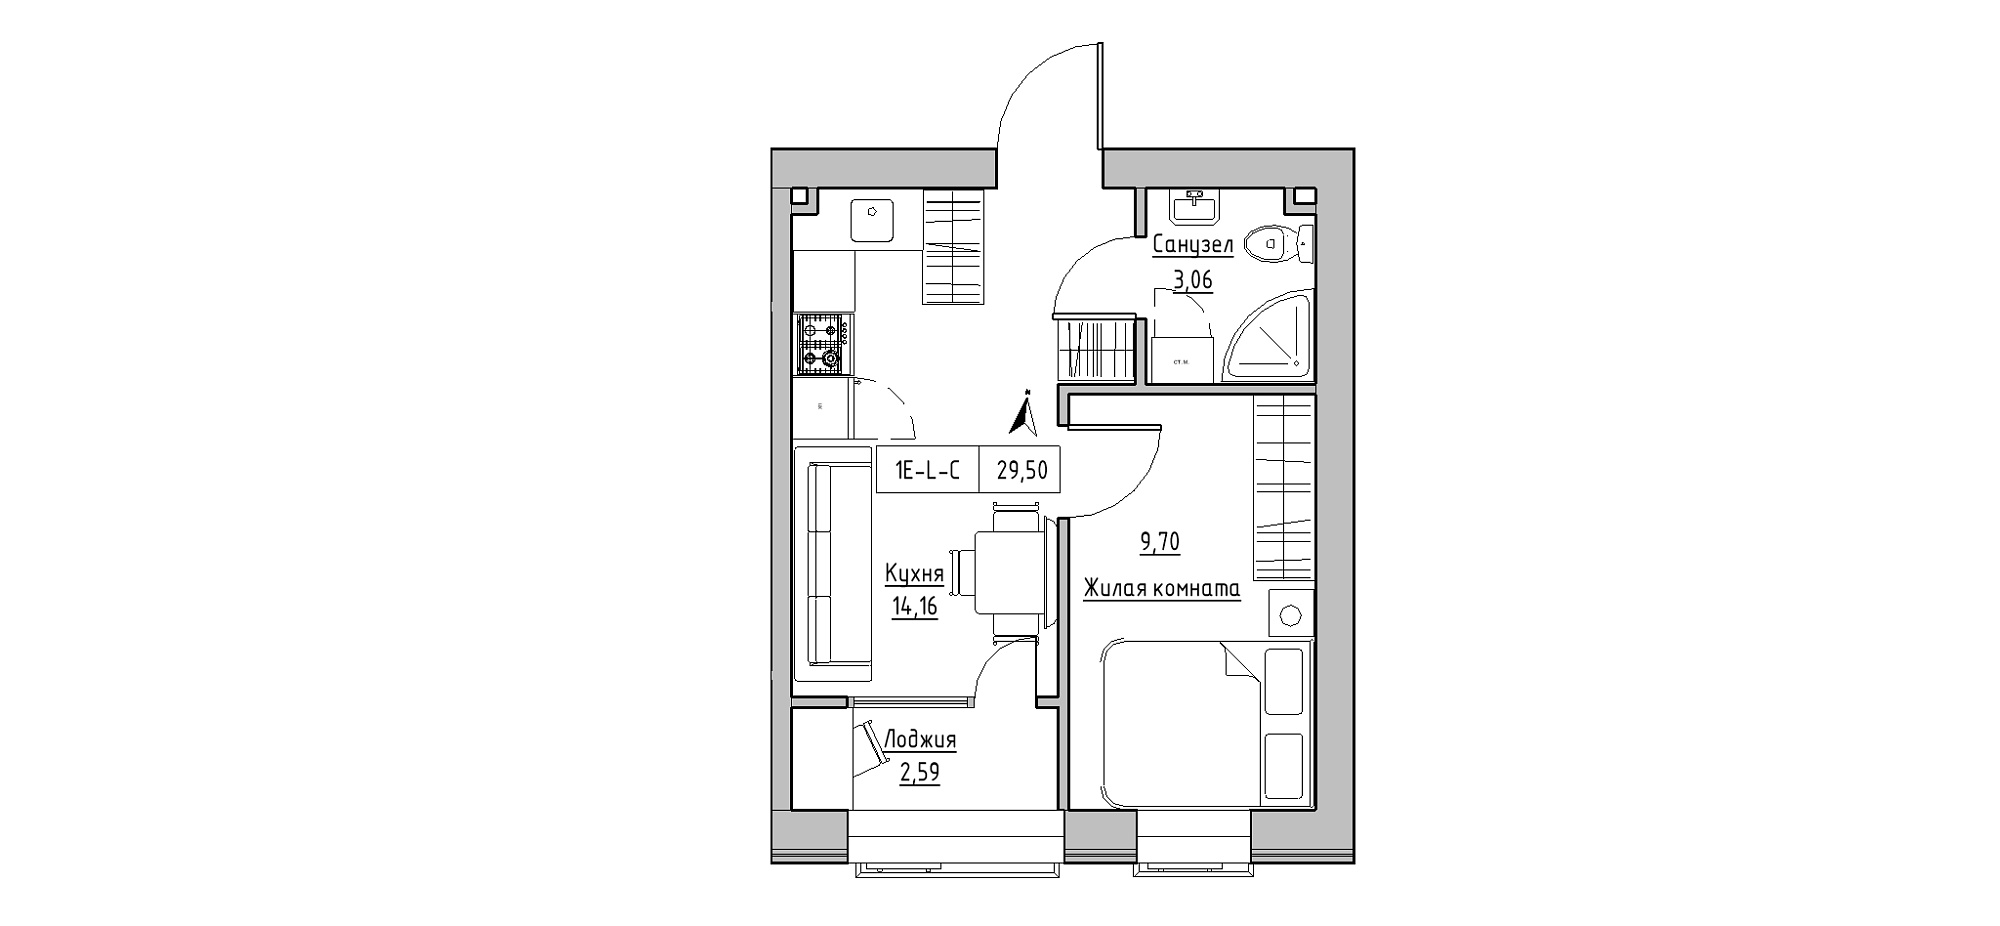 Планировка 1-к квартира площей 29.5м2, KS-020-03/0006.